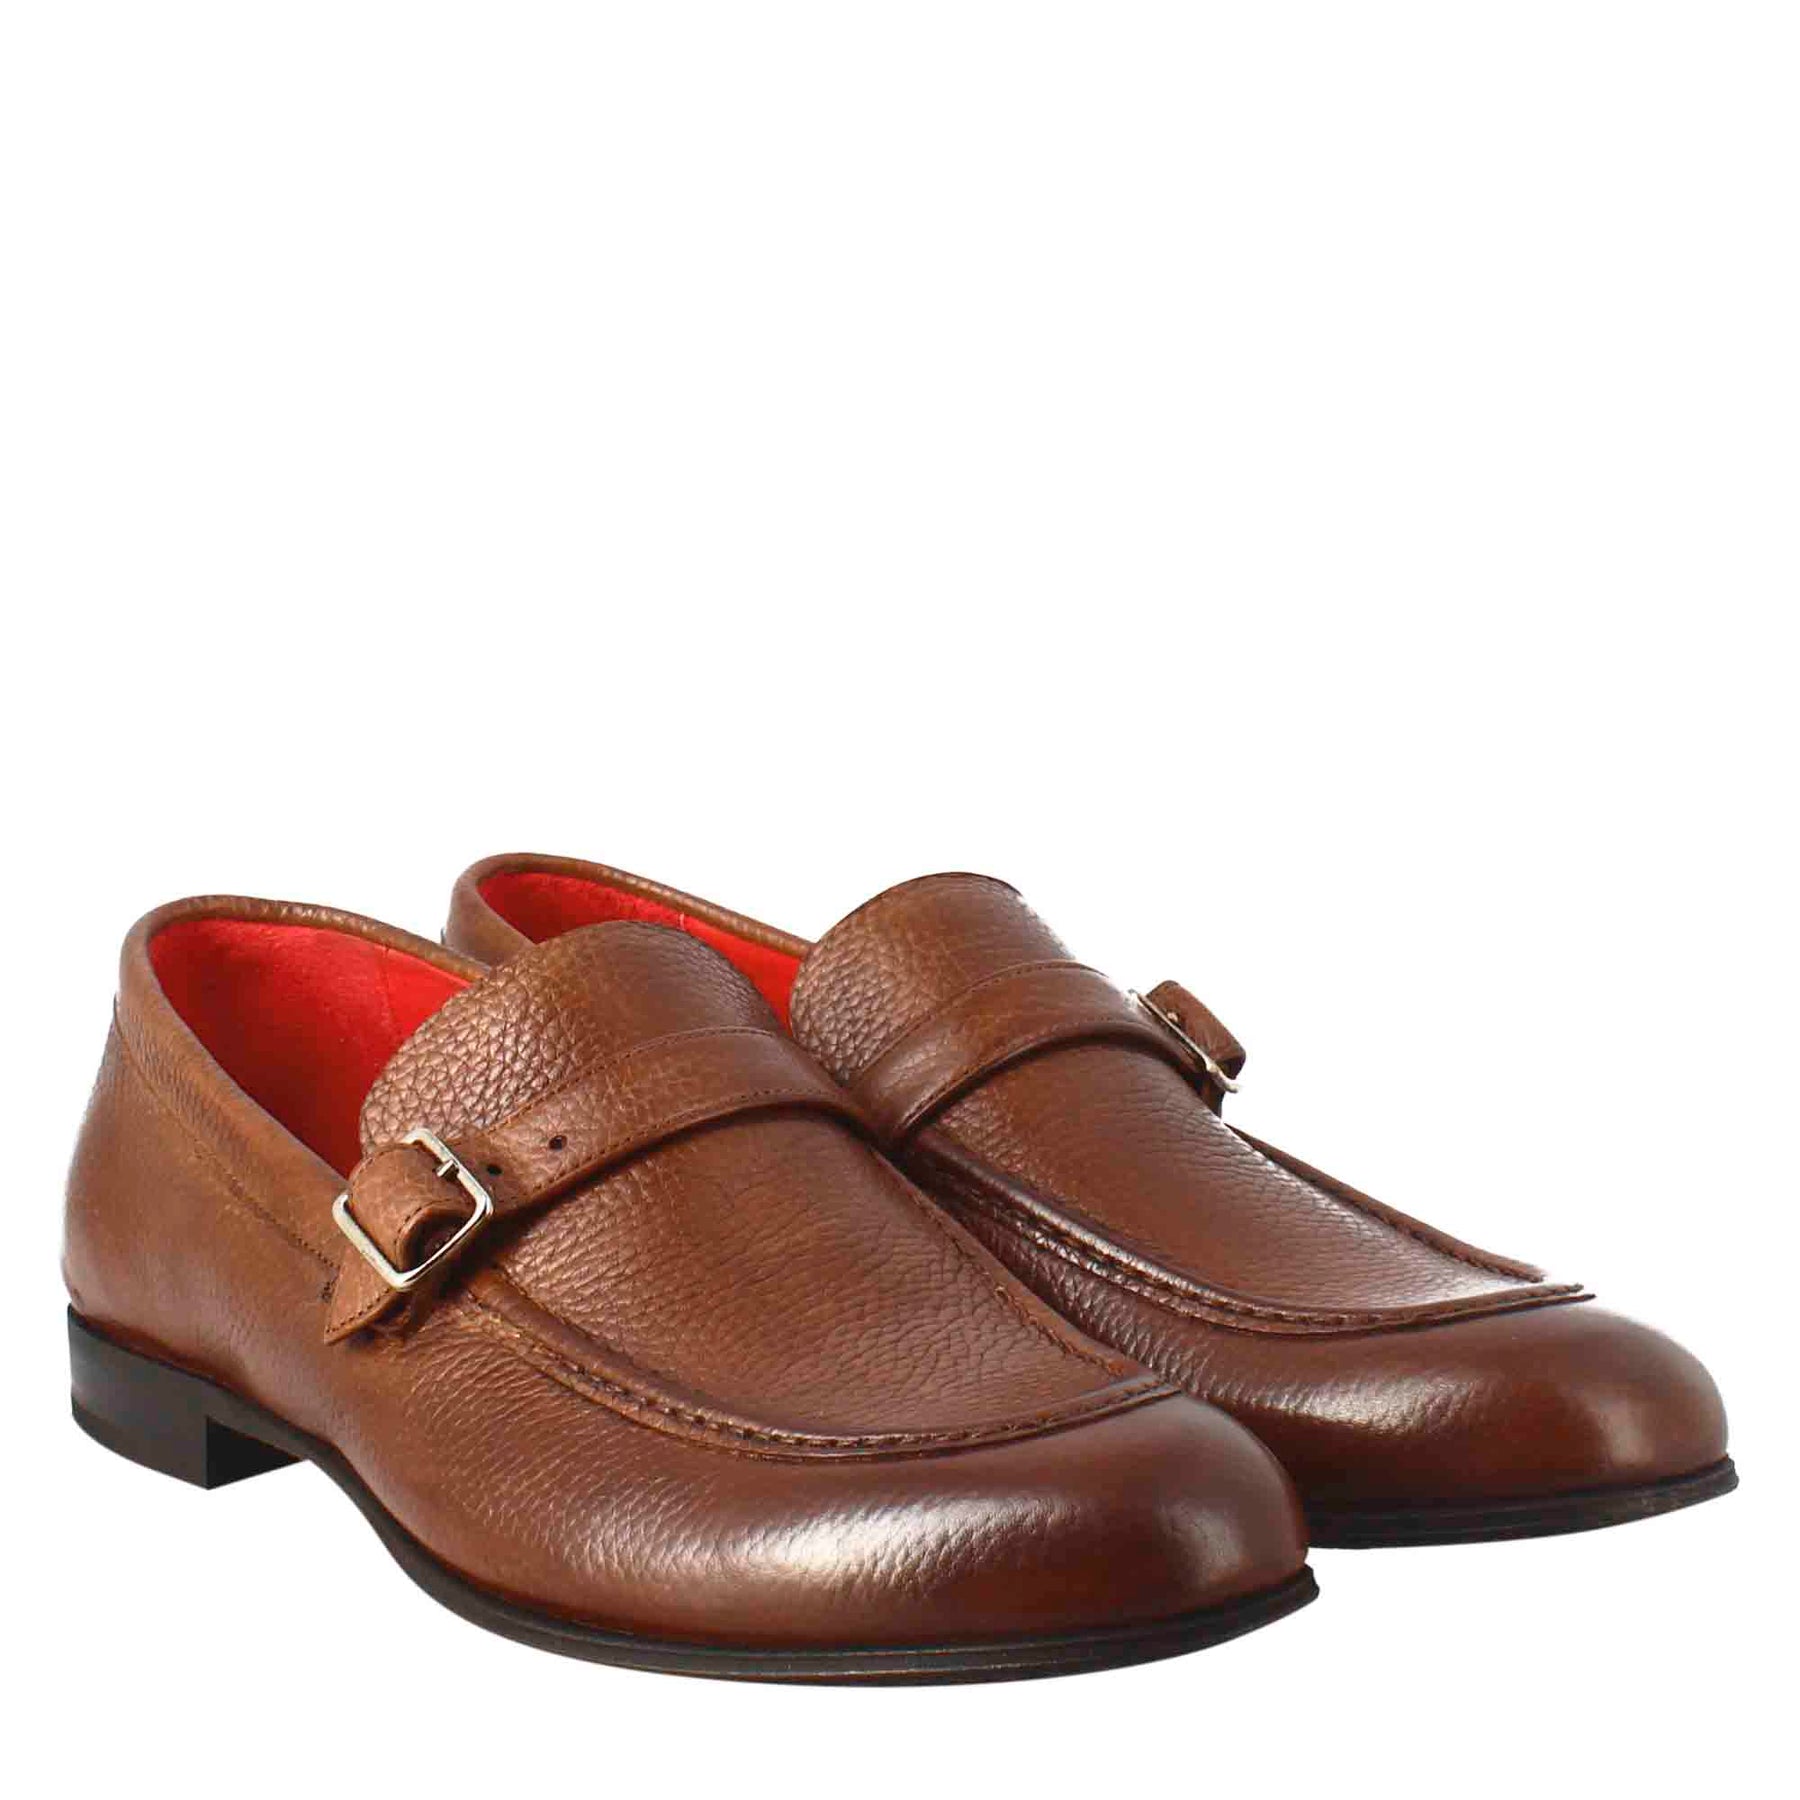 Elegant brown moccasin for men in leather 